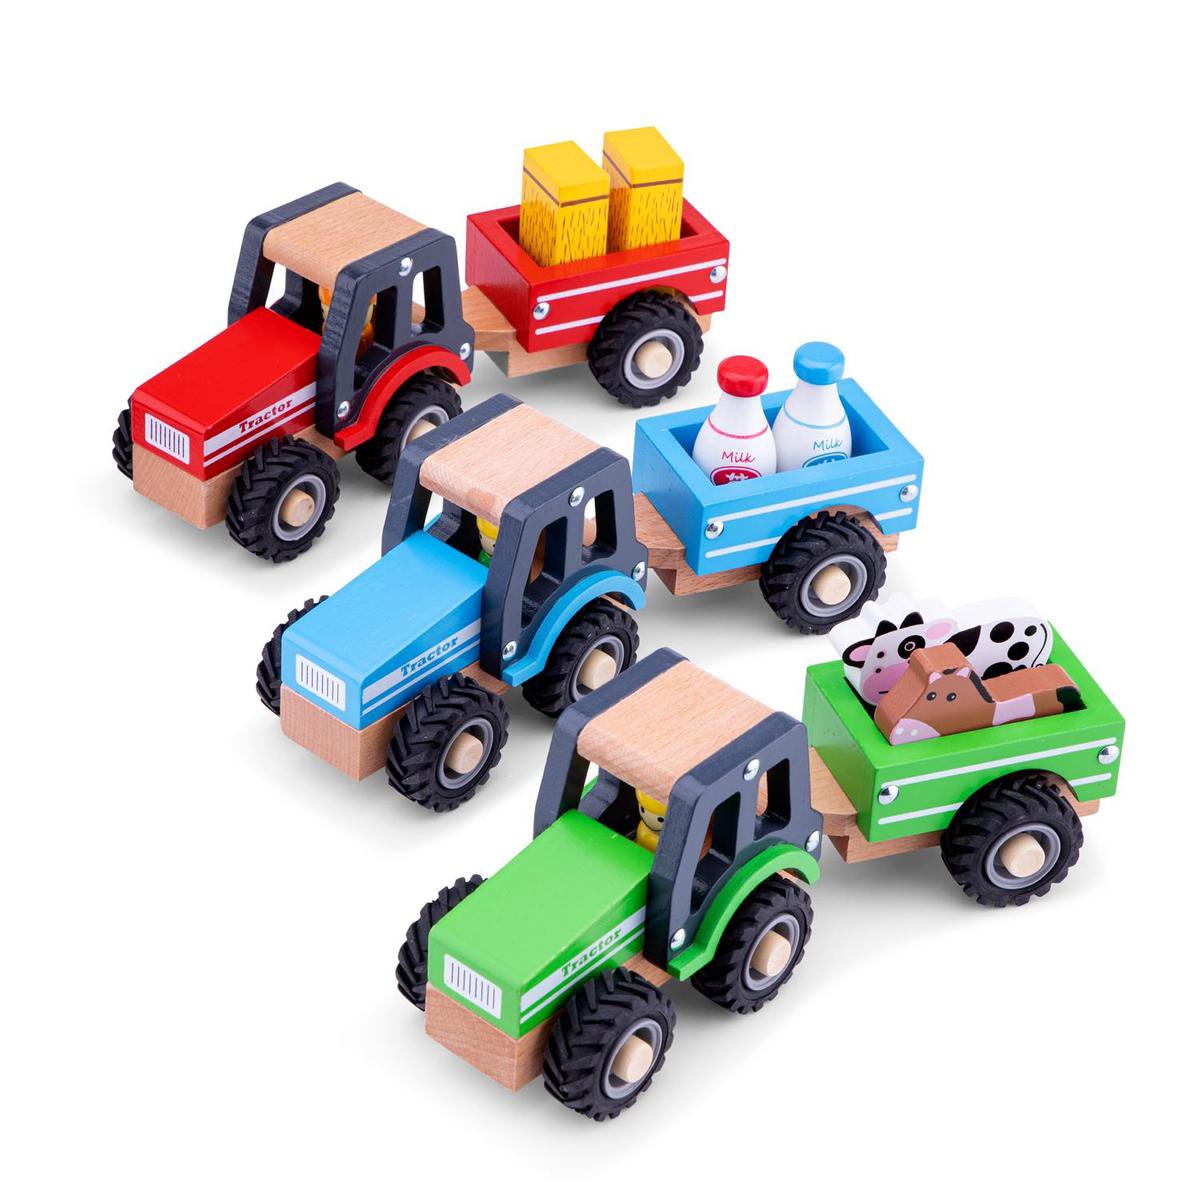 Senator Emuleren voorraad New Classic Toys Houten Tractor met Aanhanger en Dieren - Groen | bol.com